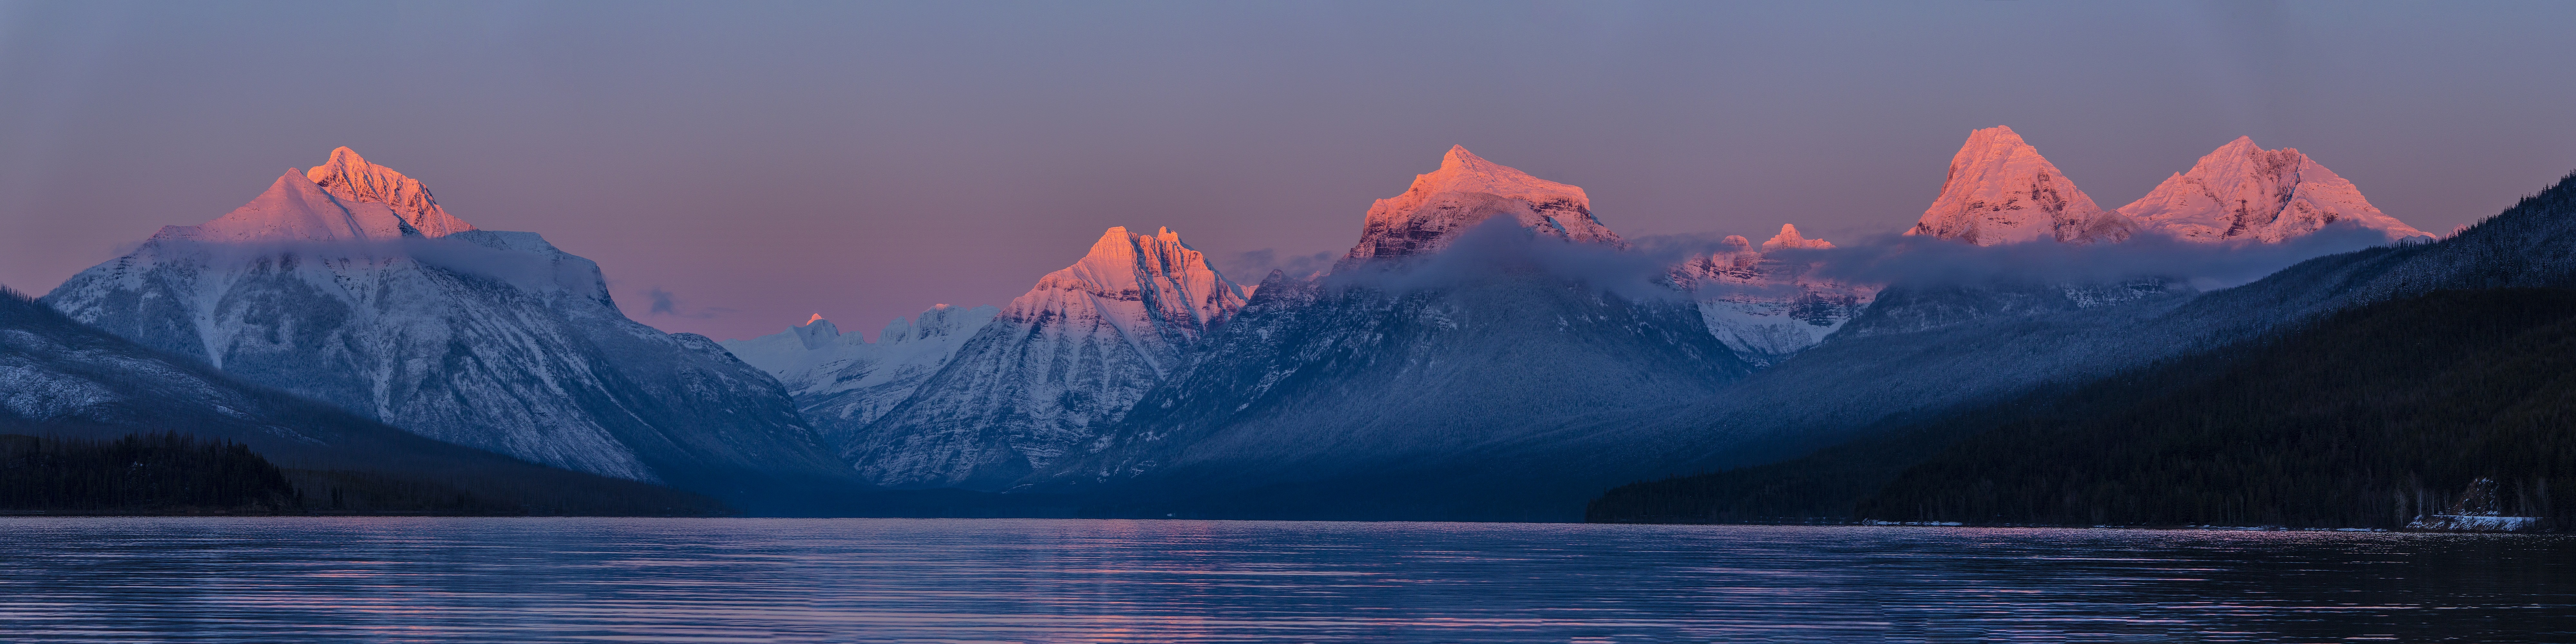 Бесплатное фото Вид на горы со снежными вершинами